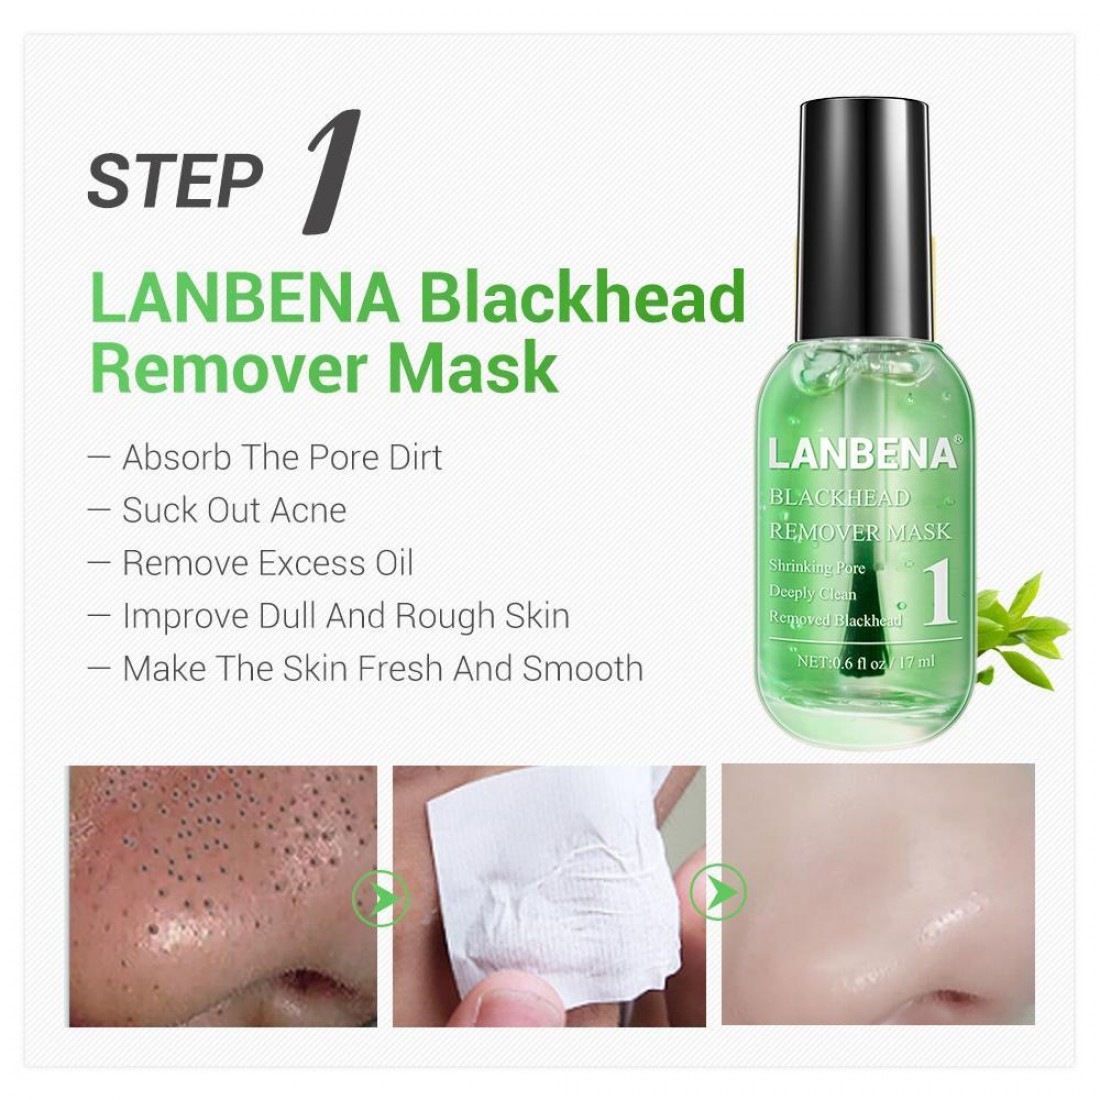 Blackhead remover перевод. Маска LANBENA Blackhead Remover. Маска Blackhead Remover Mask. LANBENA комбинированный набор для очистки пор. Ланбена сыворотка для лица.